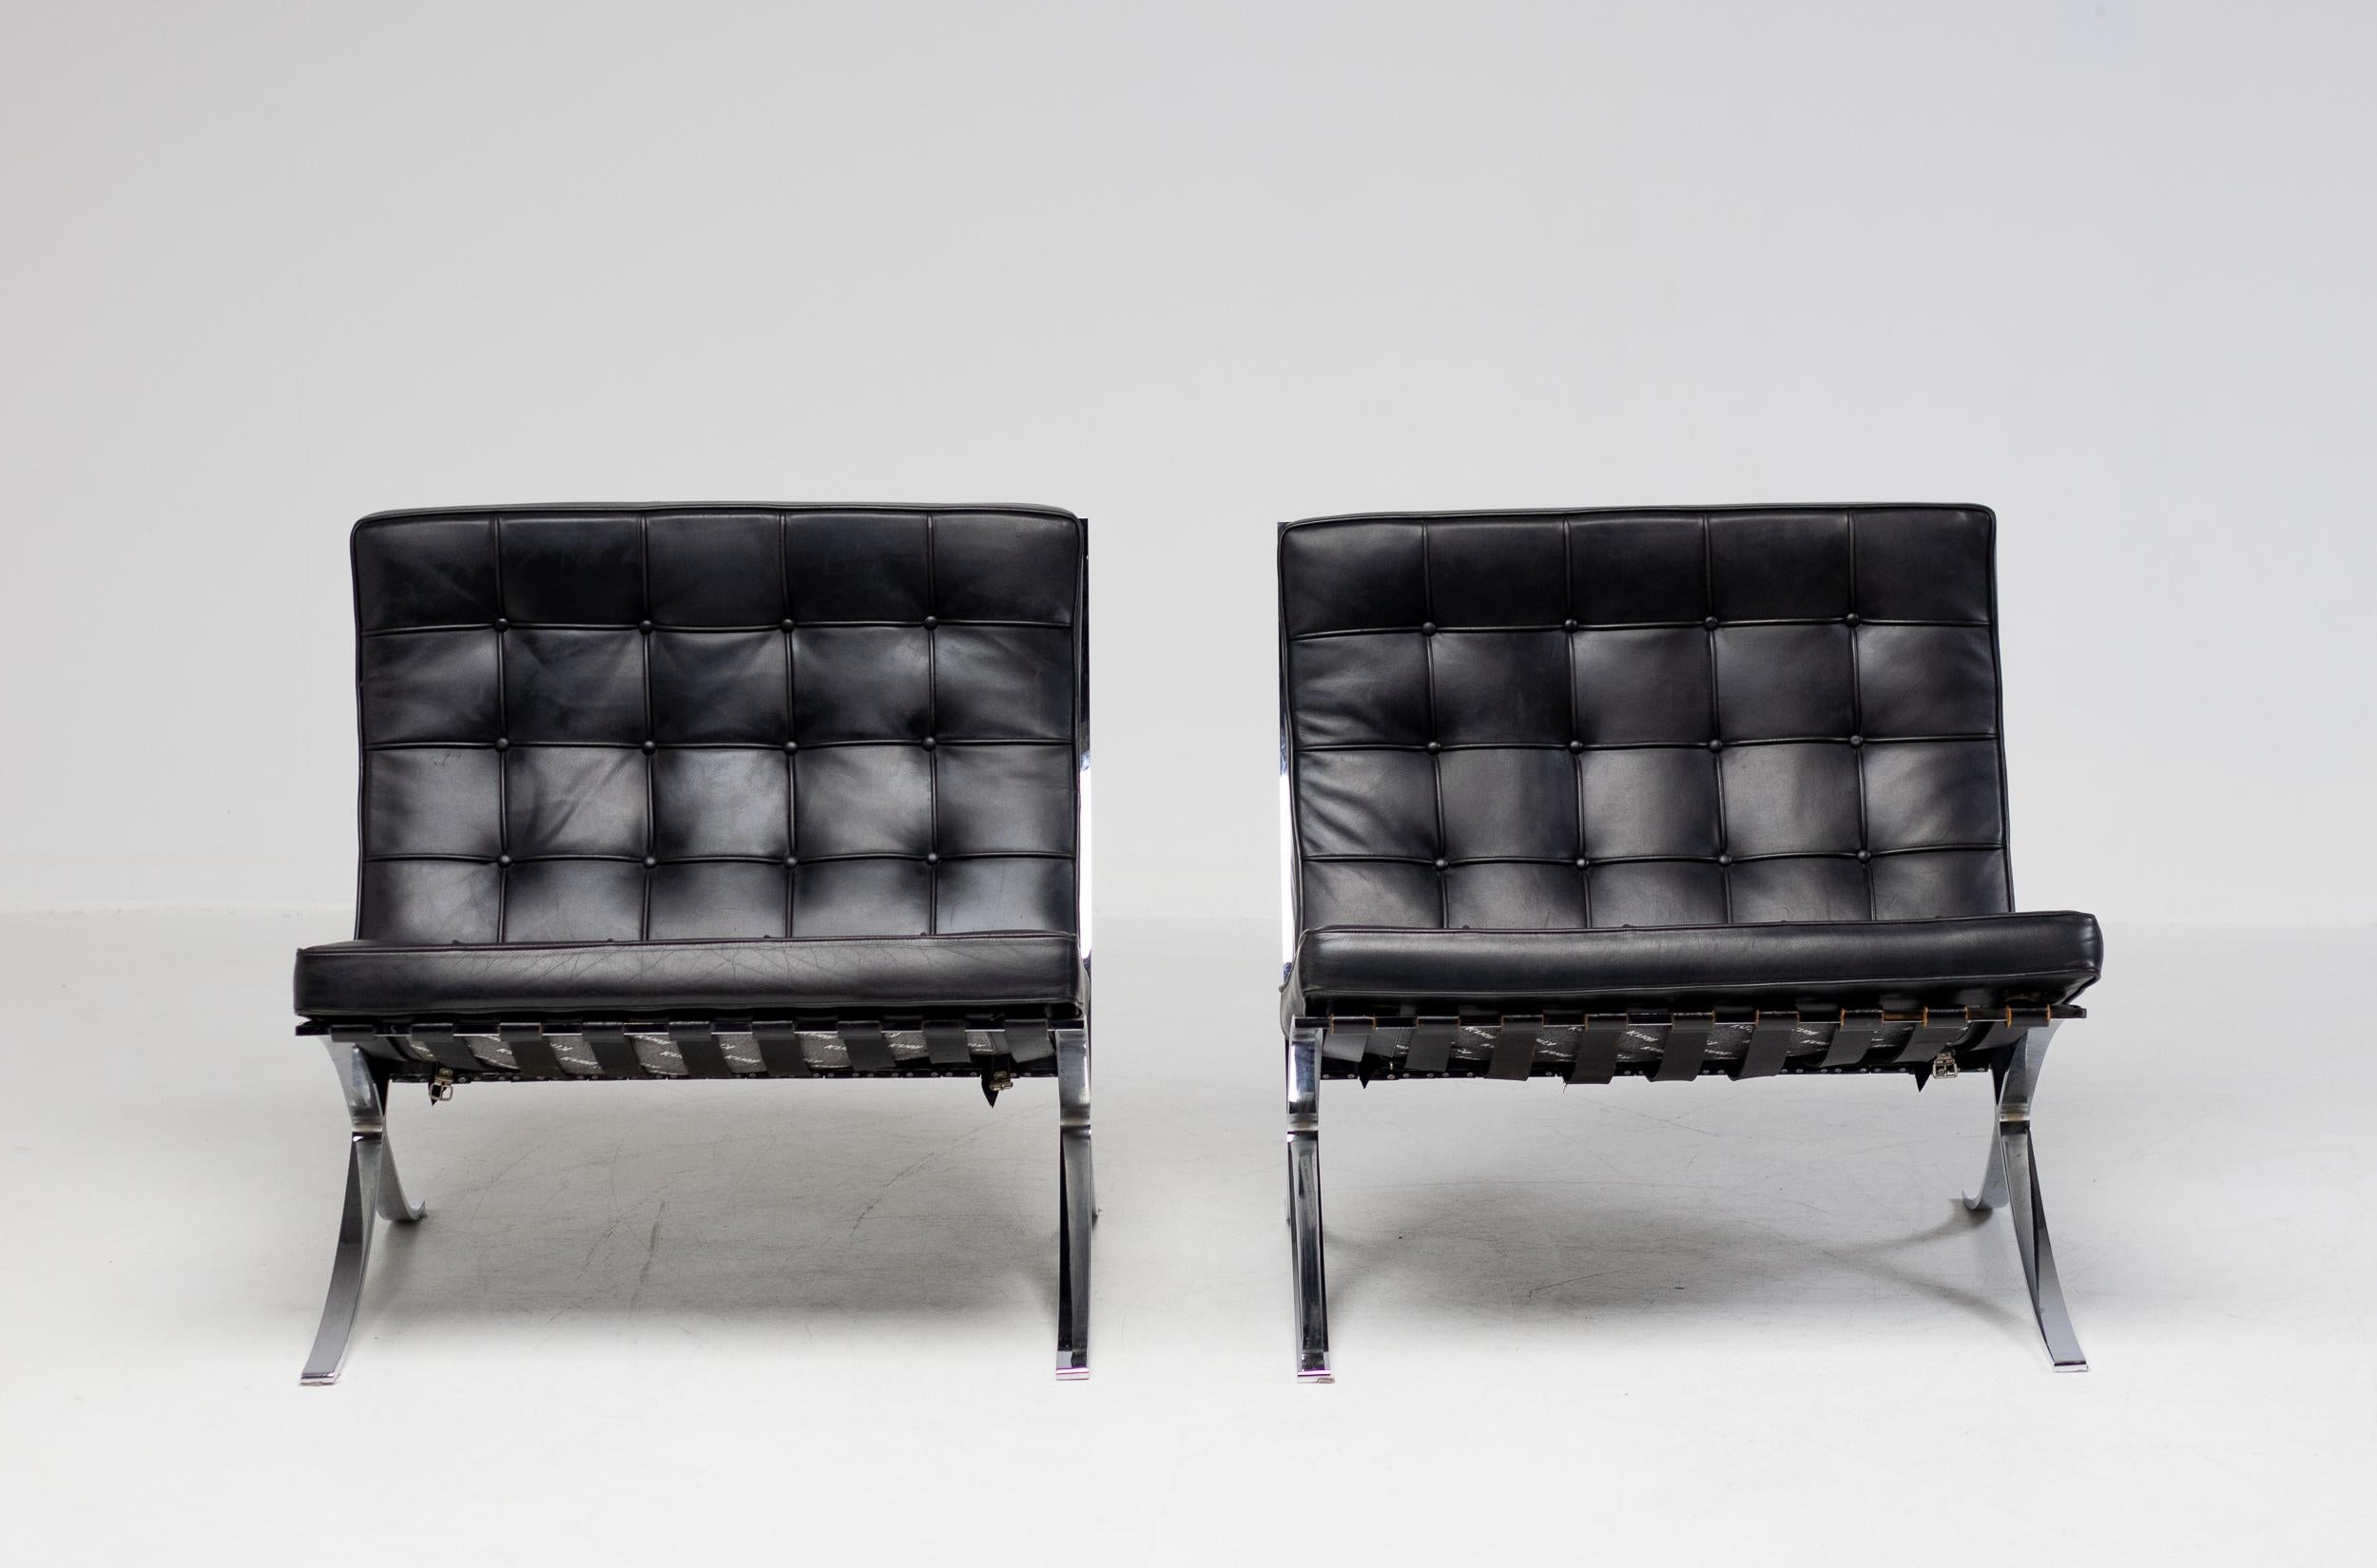 Paire de chaises Barcelona de Mies Van der Rohe pour Knoll International en cuir noir.
Signature gravée dans le cadre et logo Knoll au bas des coussins.
Merveilleux état d'origine.
Le prix est fixé par paire.

La chaise Barcelona, l'un des objets